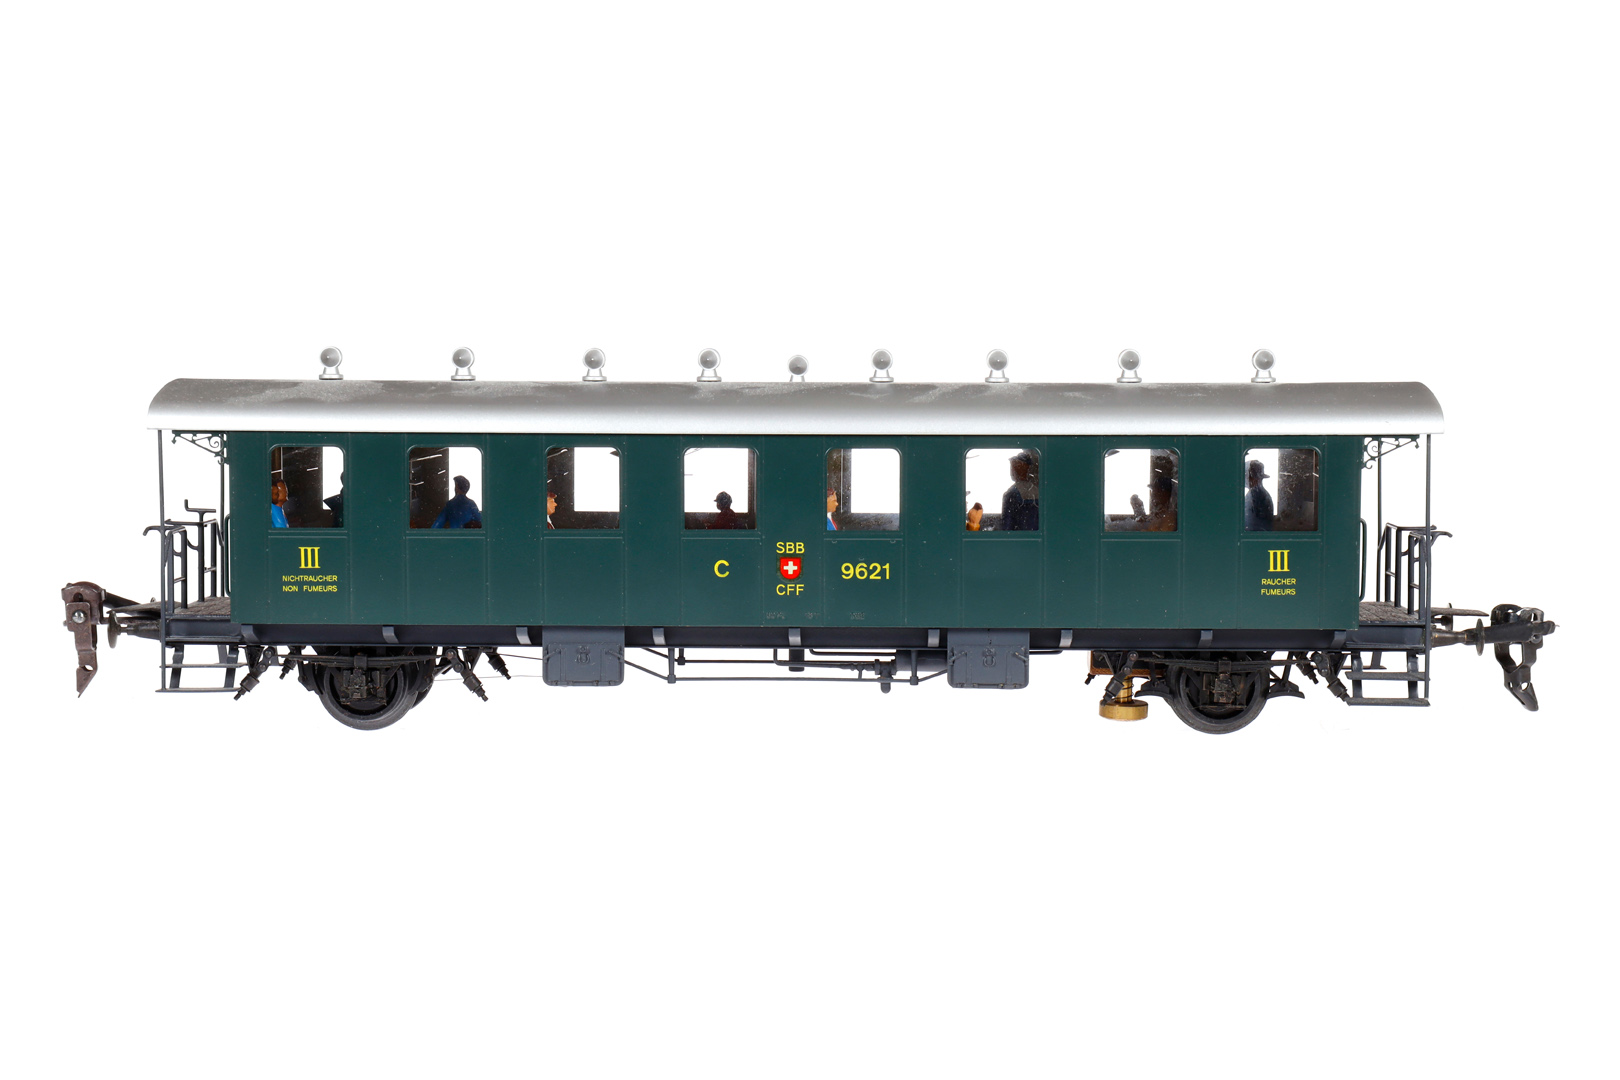 Hermann Personenwagen, Spur 0, grün, mit Inneneinrichtung, Alterungsspuren, L 32,5, Z 3